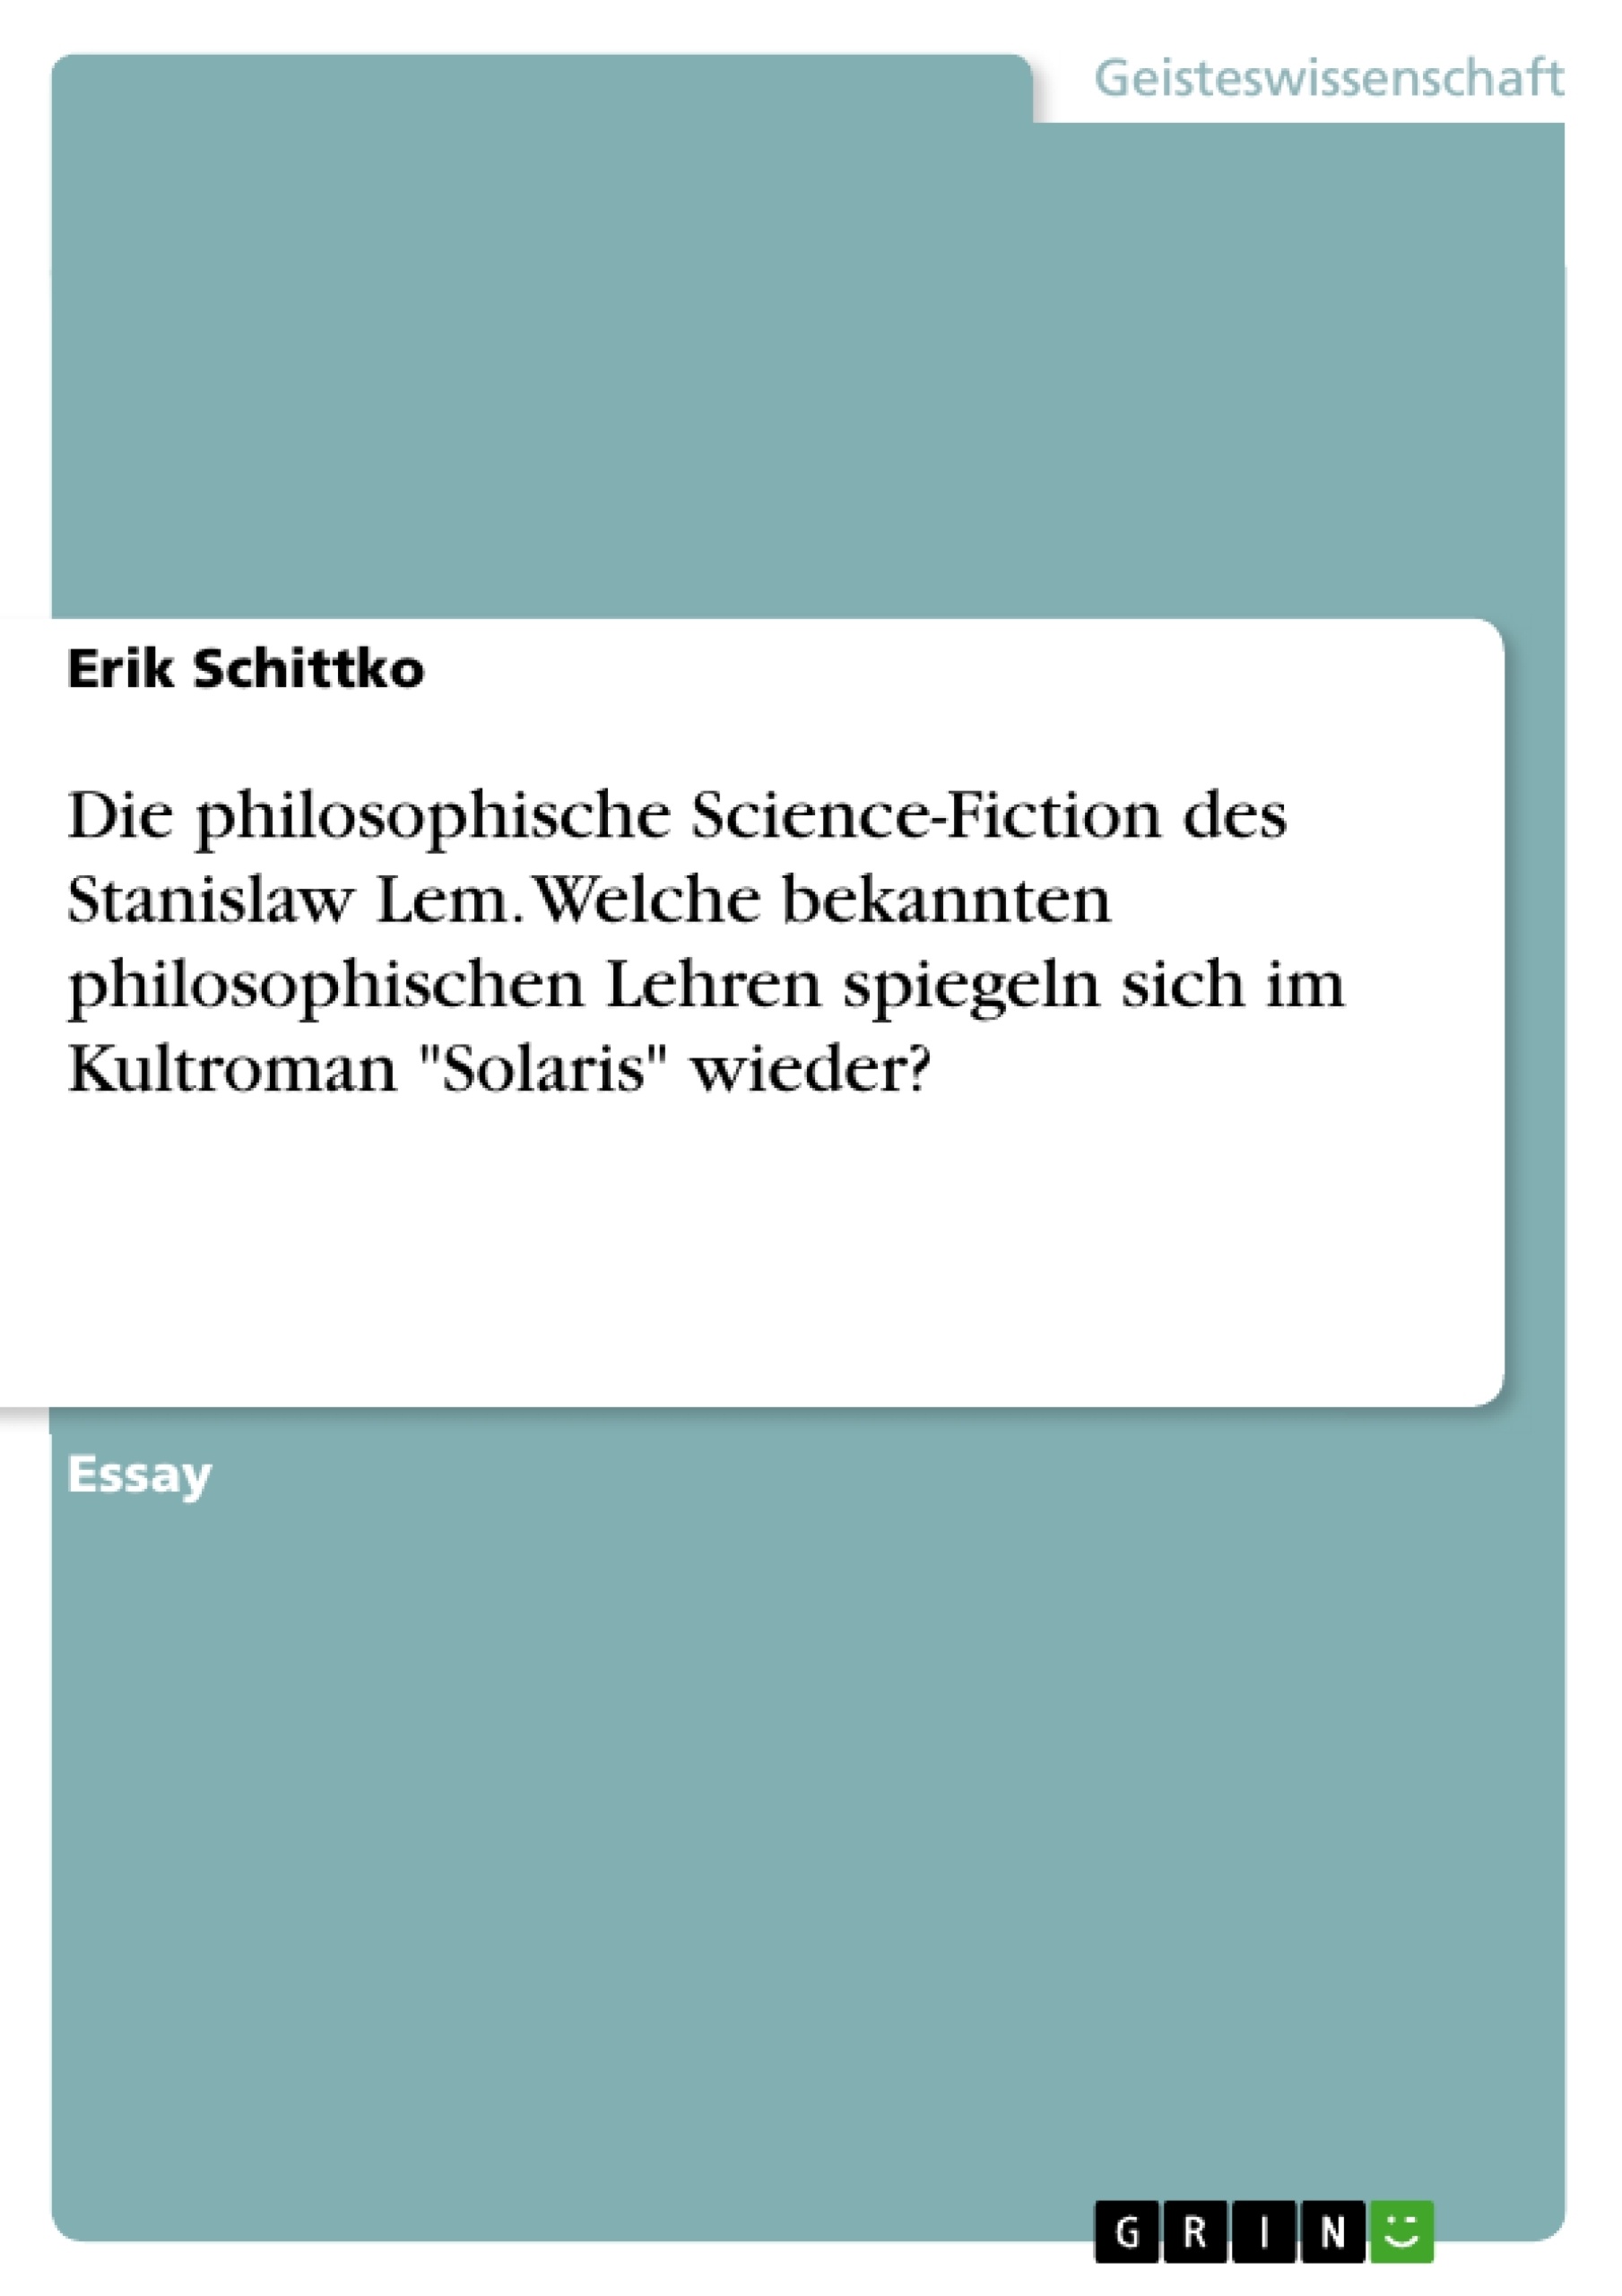 Titre: Die philosophische Science-Fiction des Stanislaw Lem. Welche bekannten philosophischen Lehren spiegeln sich im Kultroman "Solaris" wieder?